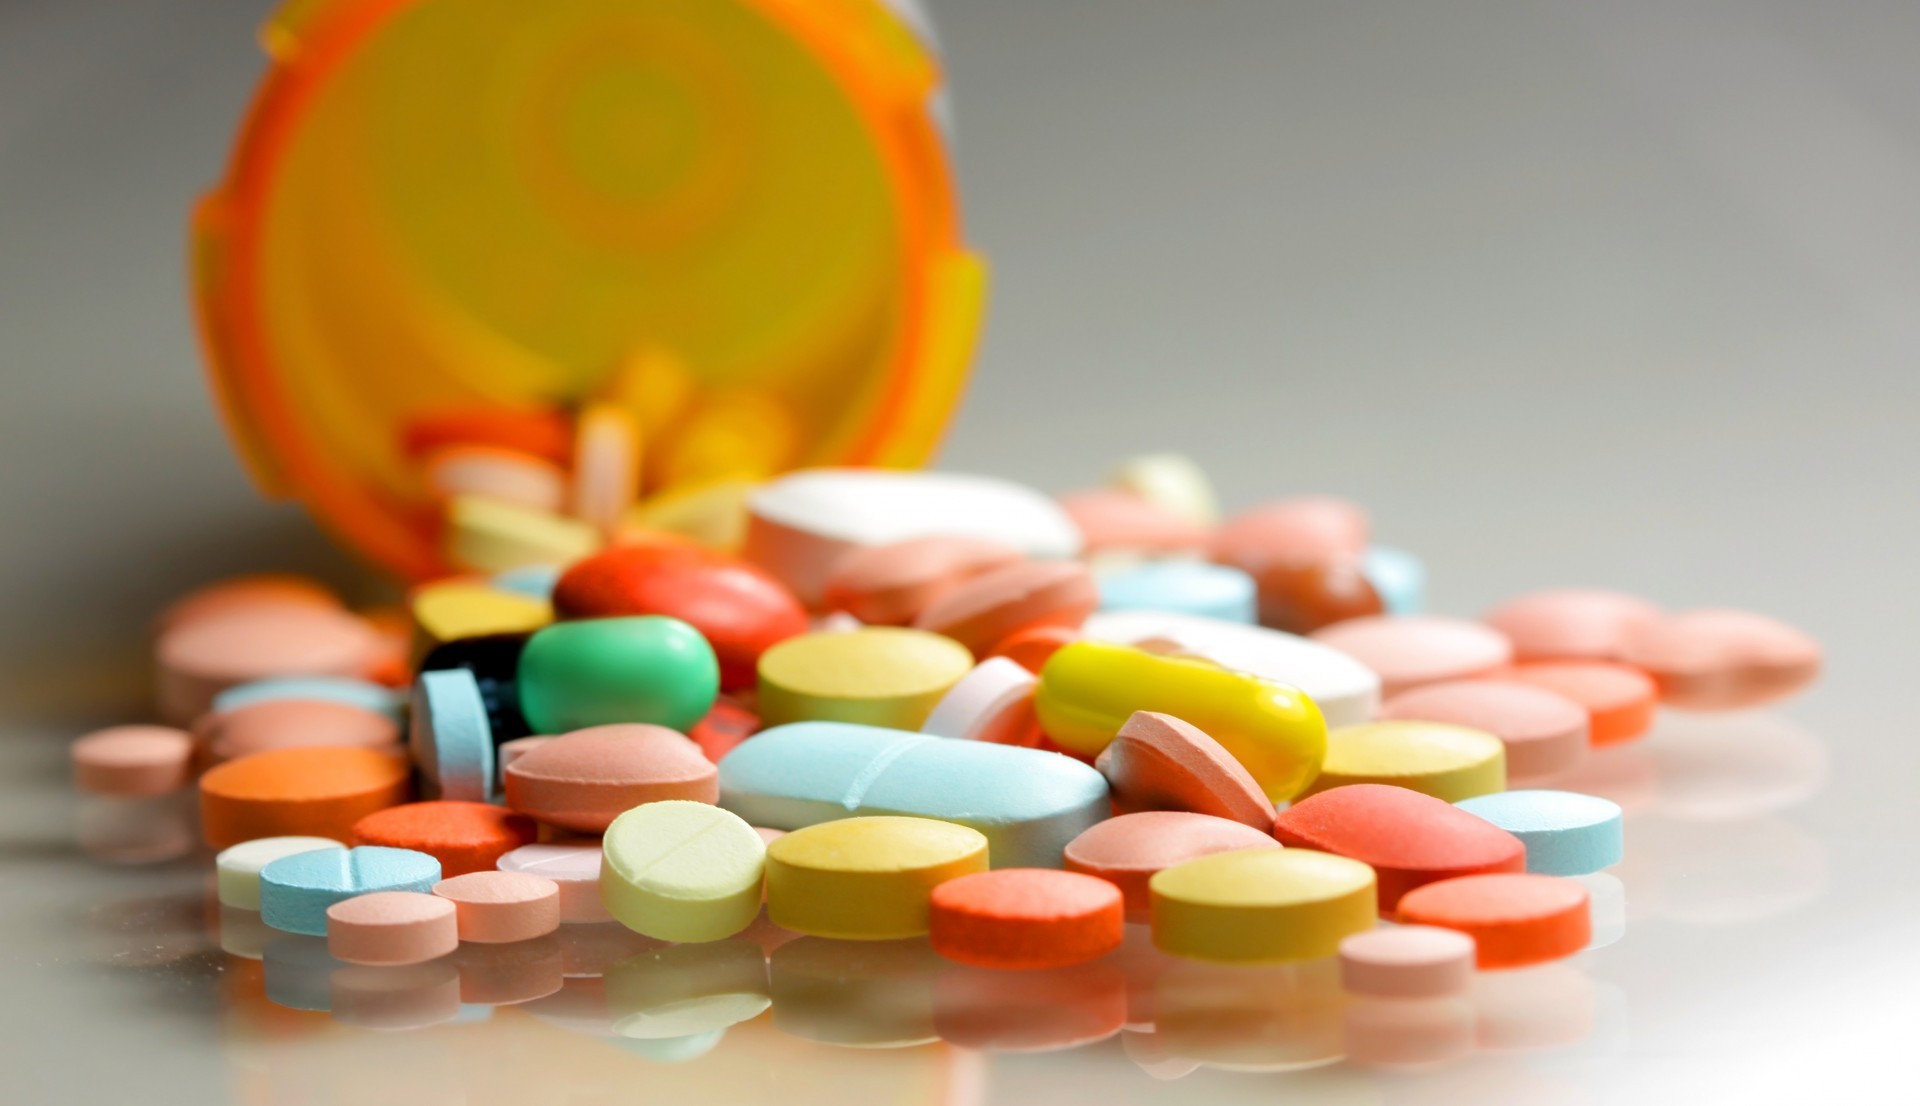 prescription_pills%2C_medications%2C_dru